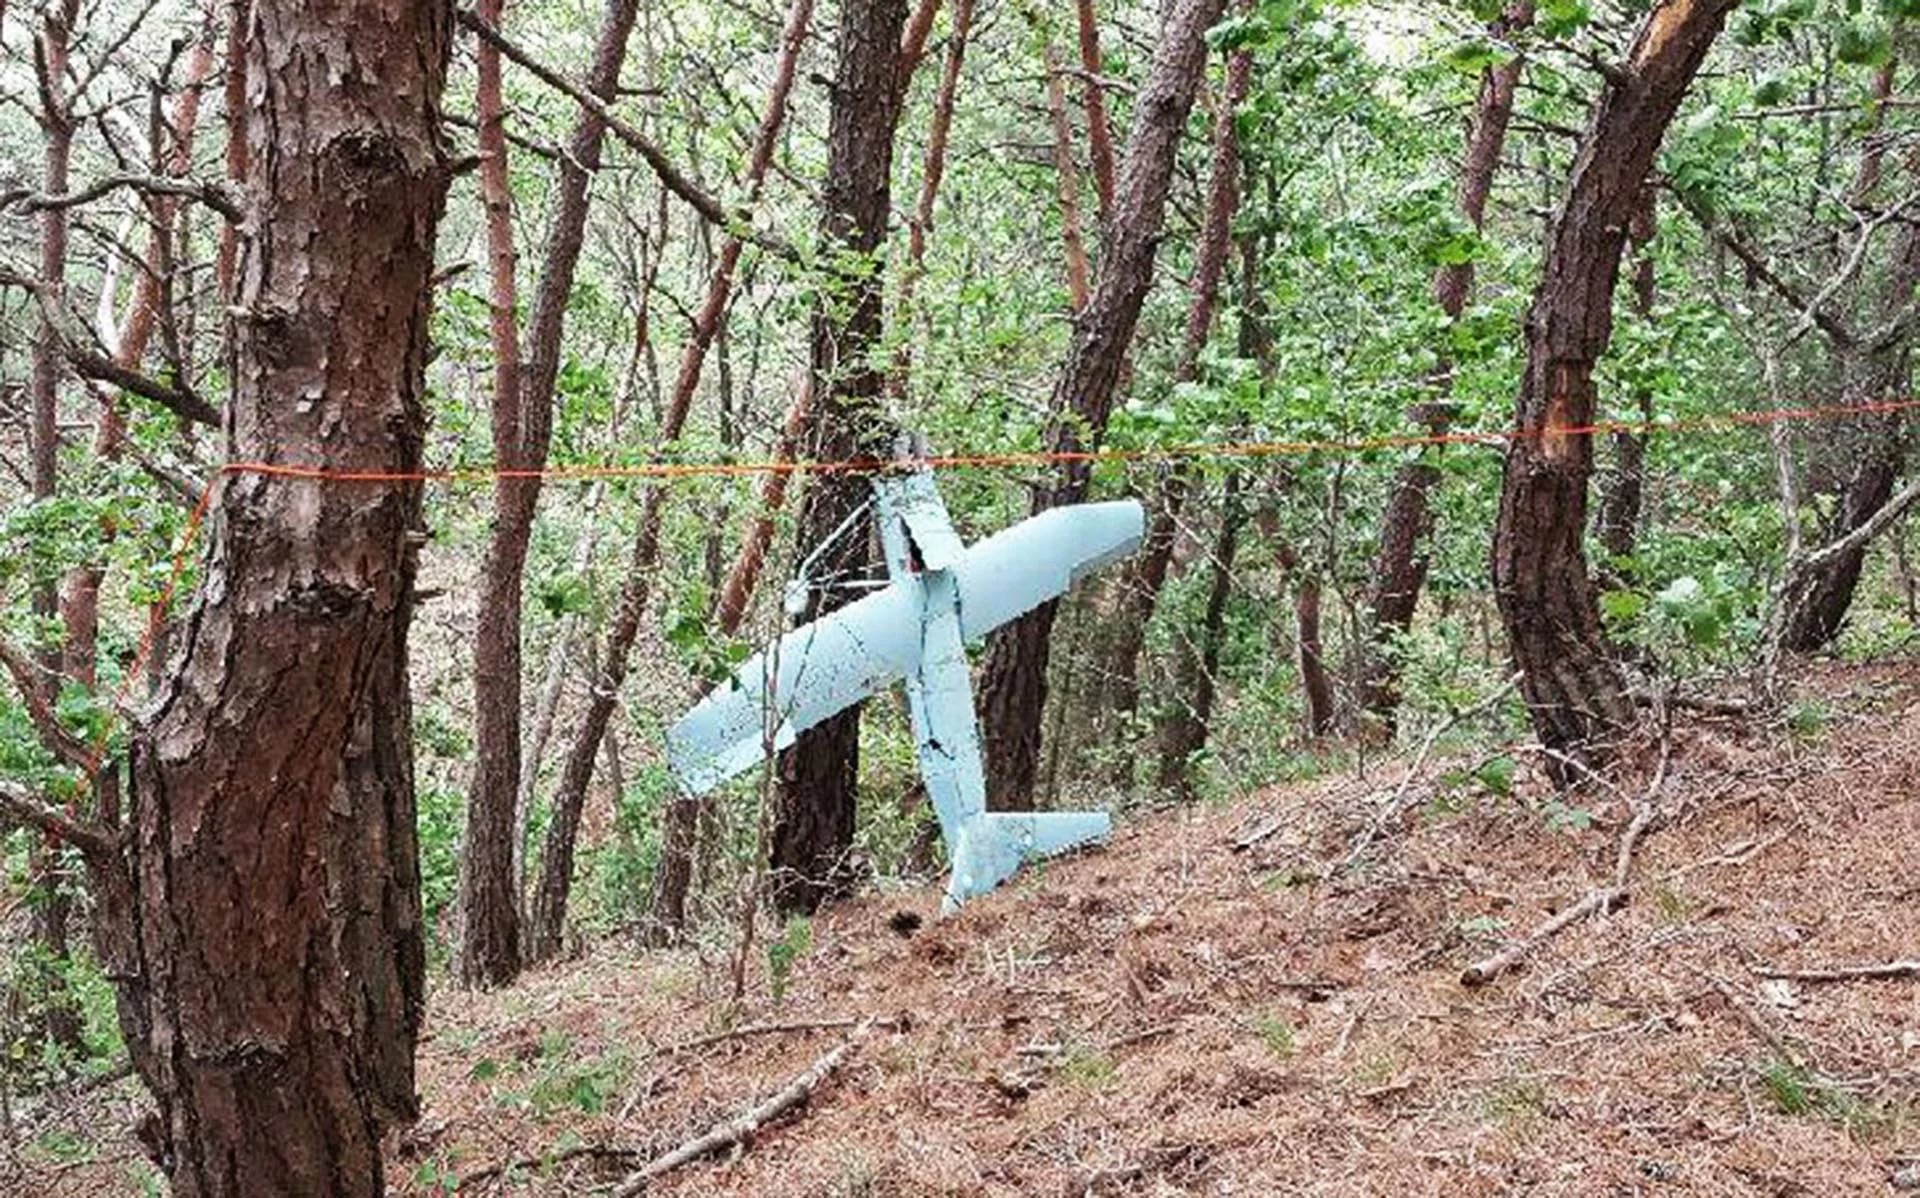 Fotografía cedida por el Ejército Surcoreano que muestra un supuesto drone norcoreano descubierto en un bosque en Inje, Corea del Sur, el pasado día 9 de junio